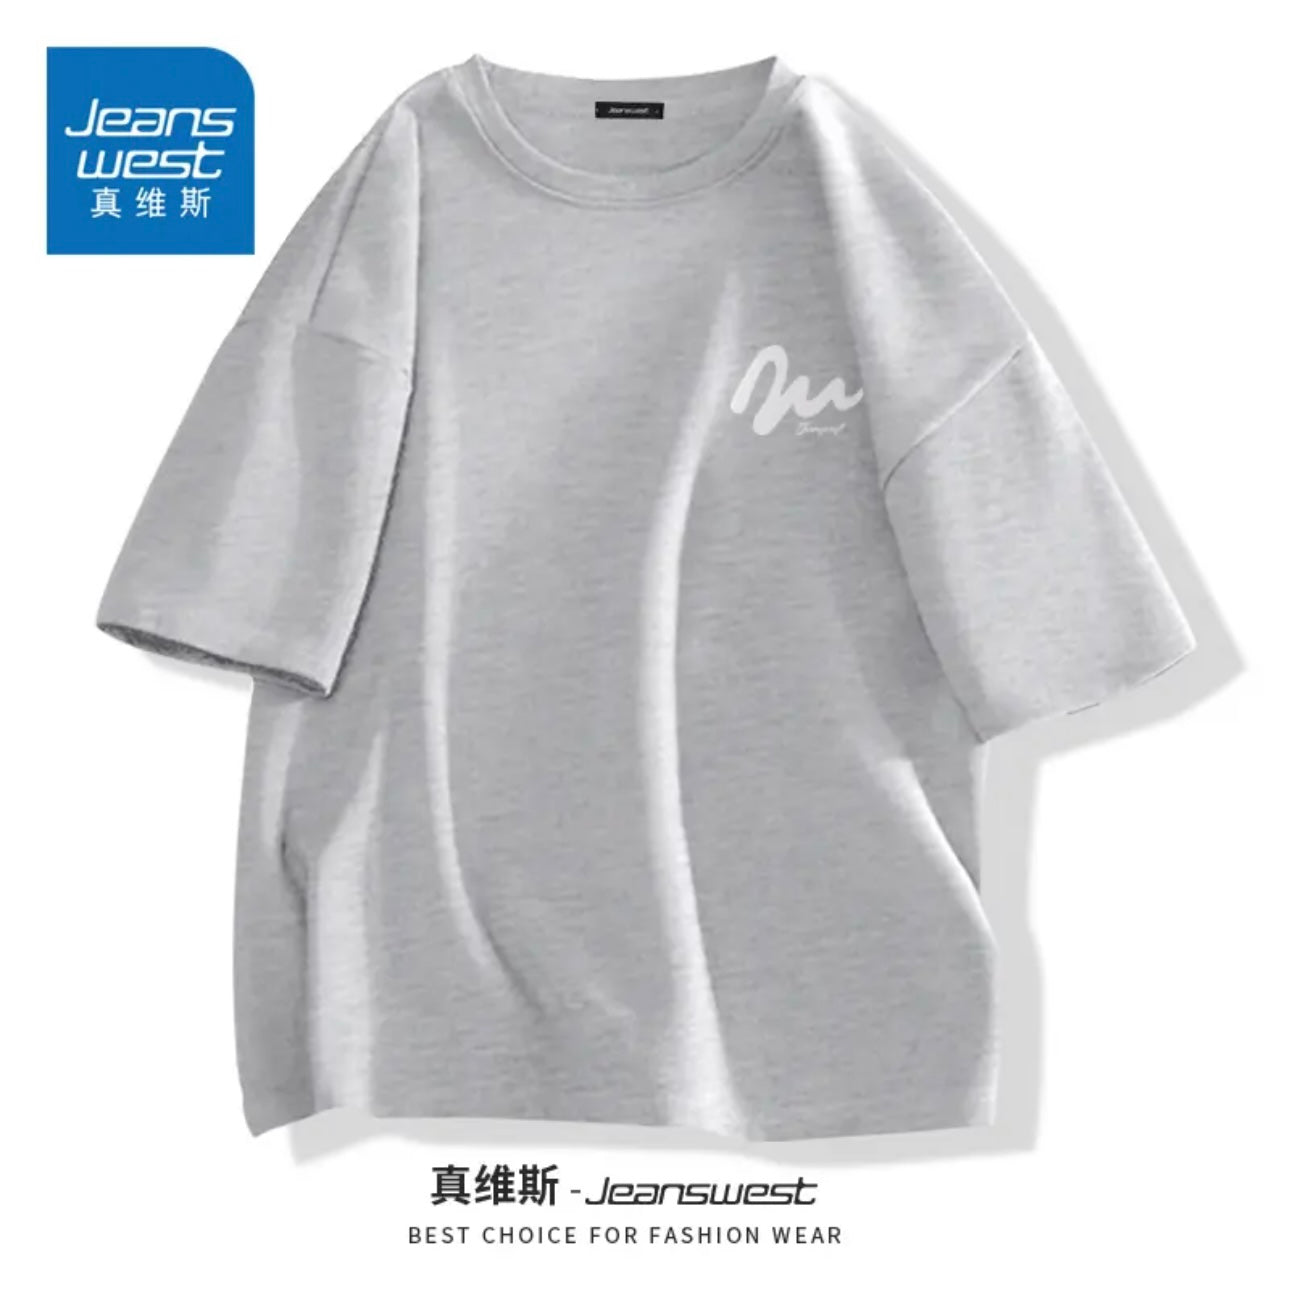 Jeans West T-Shirt (Unisex)